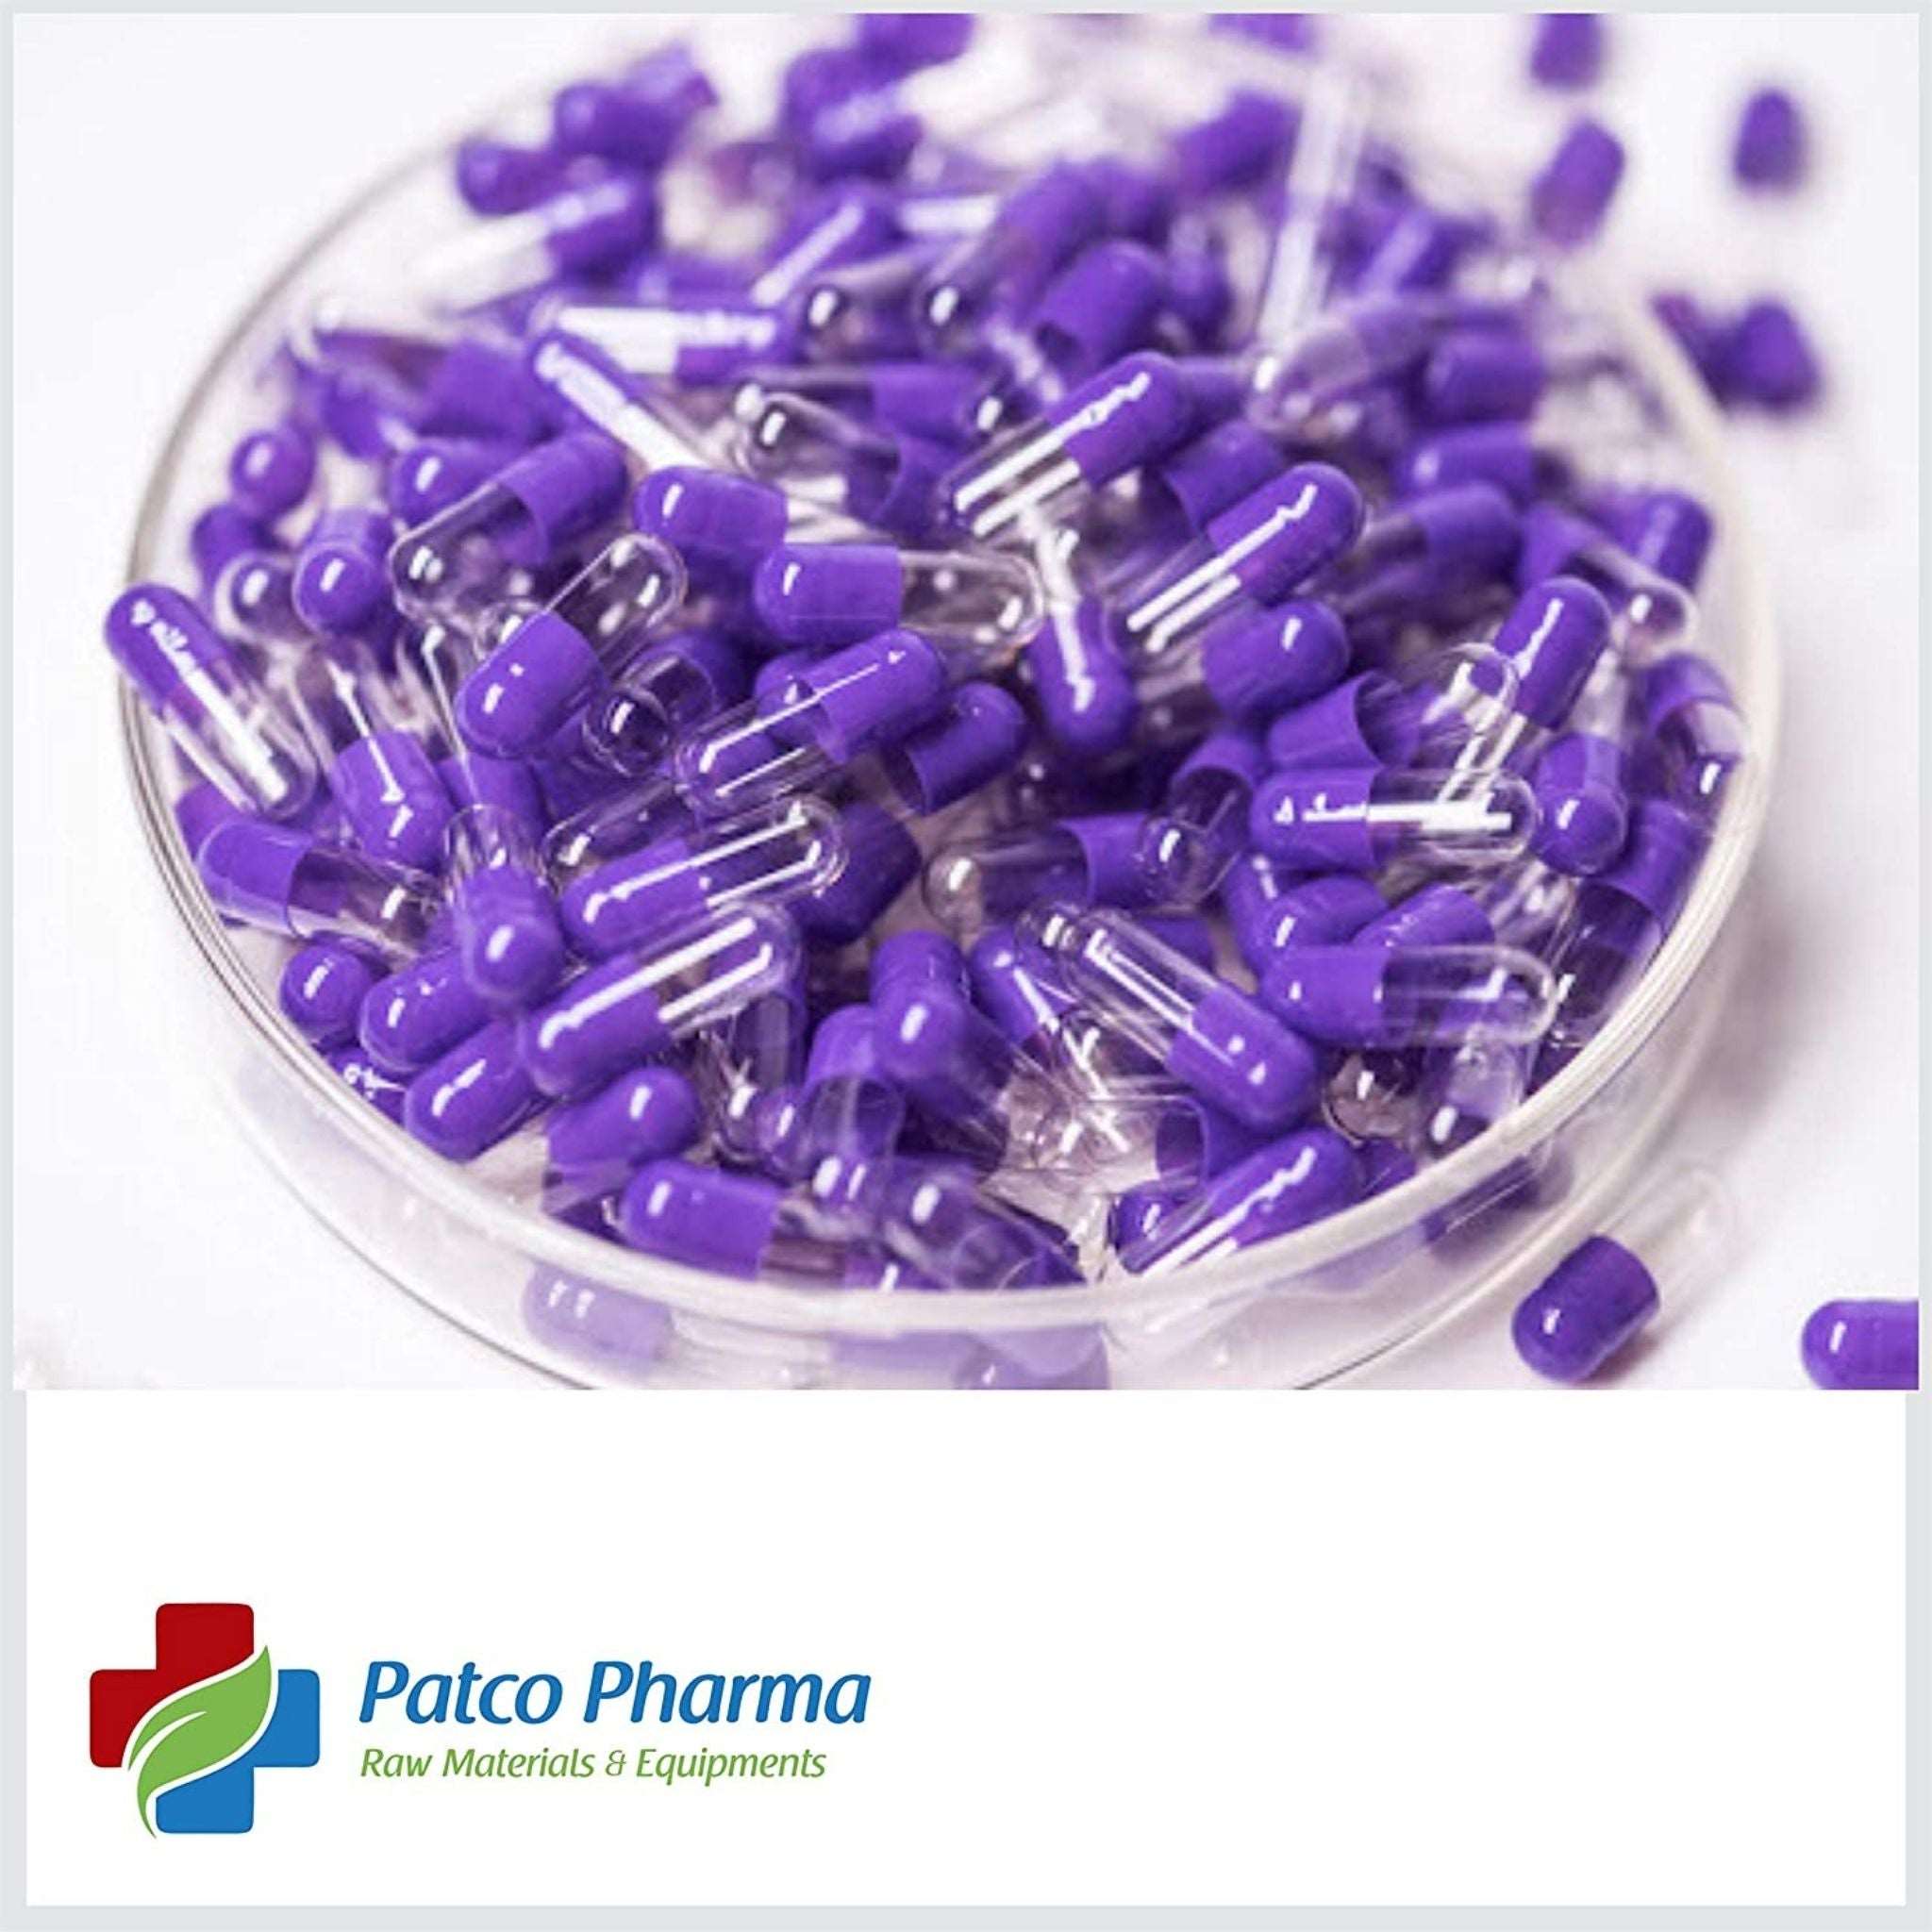 Empty Gelatin Capsule - Size 3 Patco Pharma